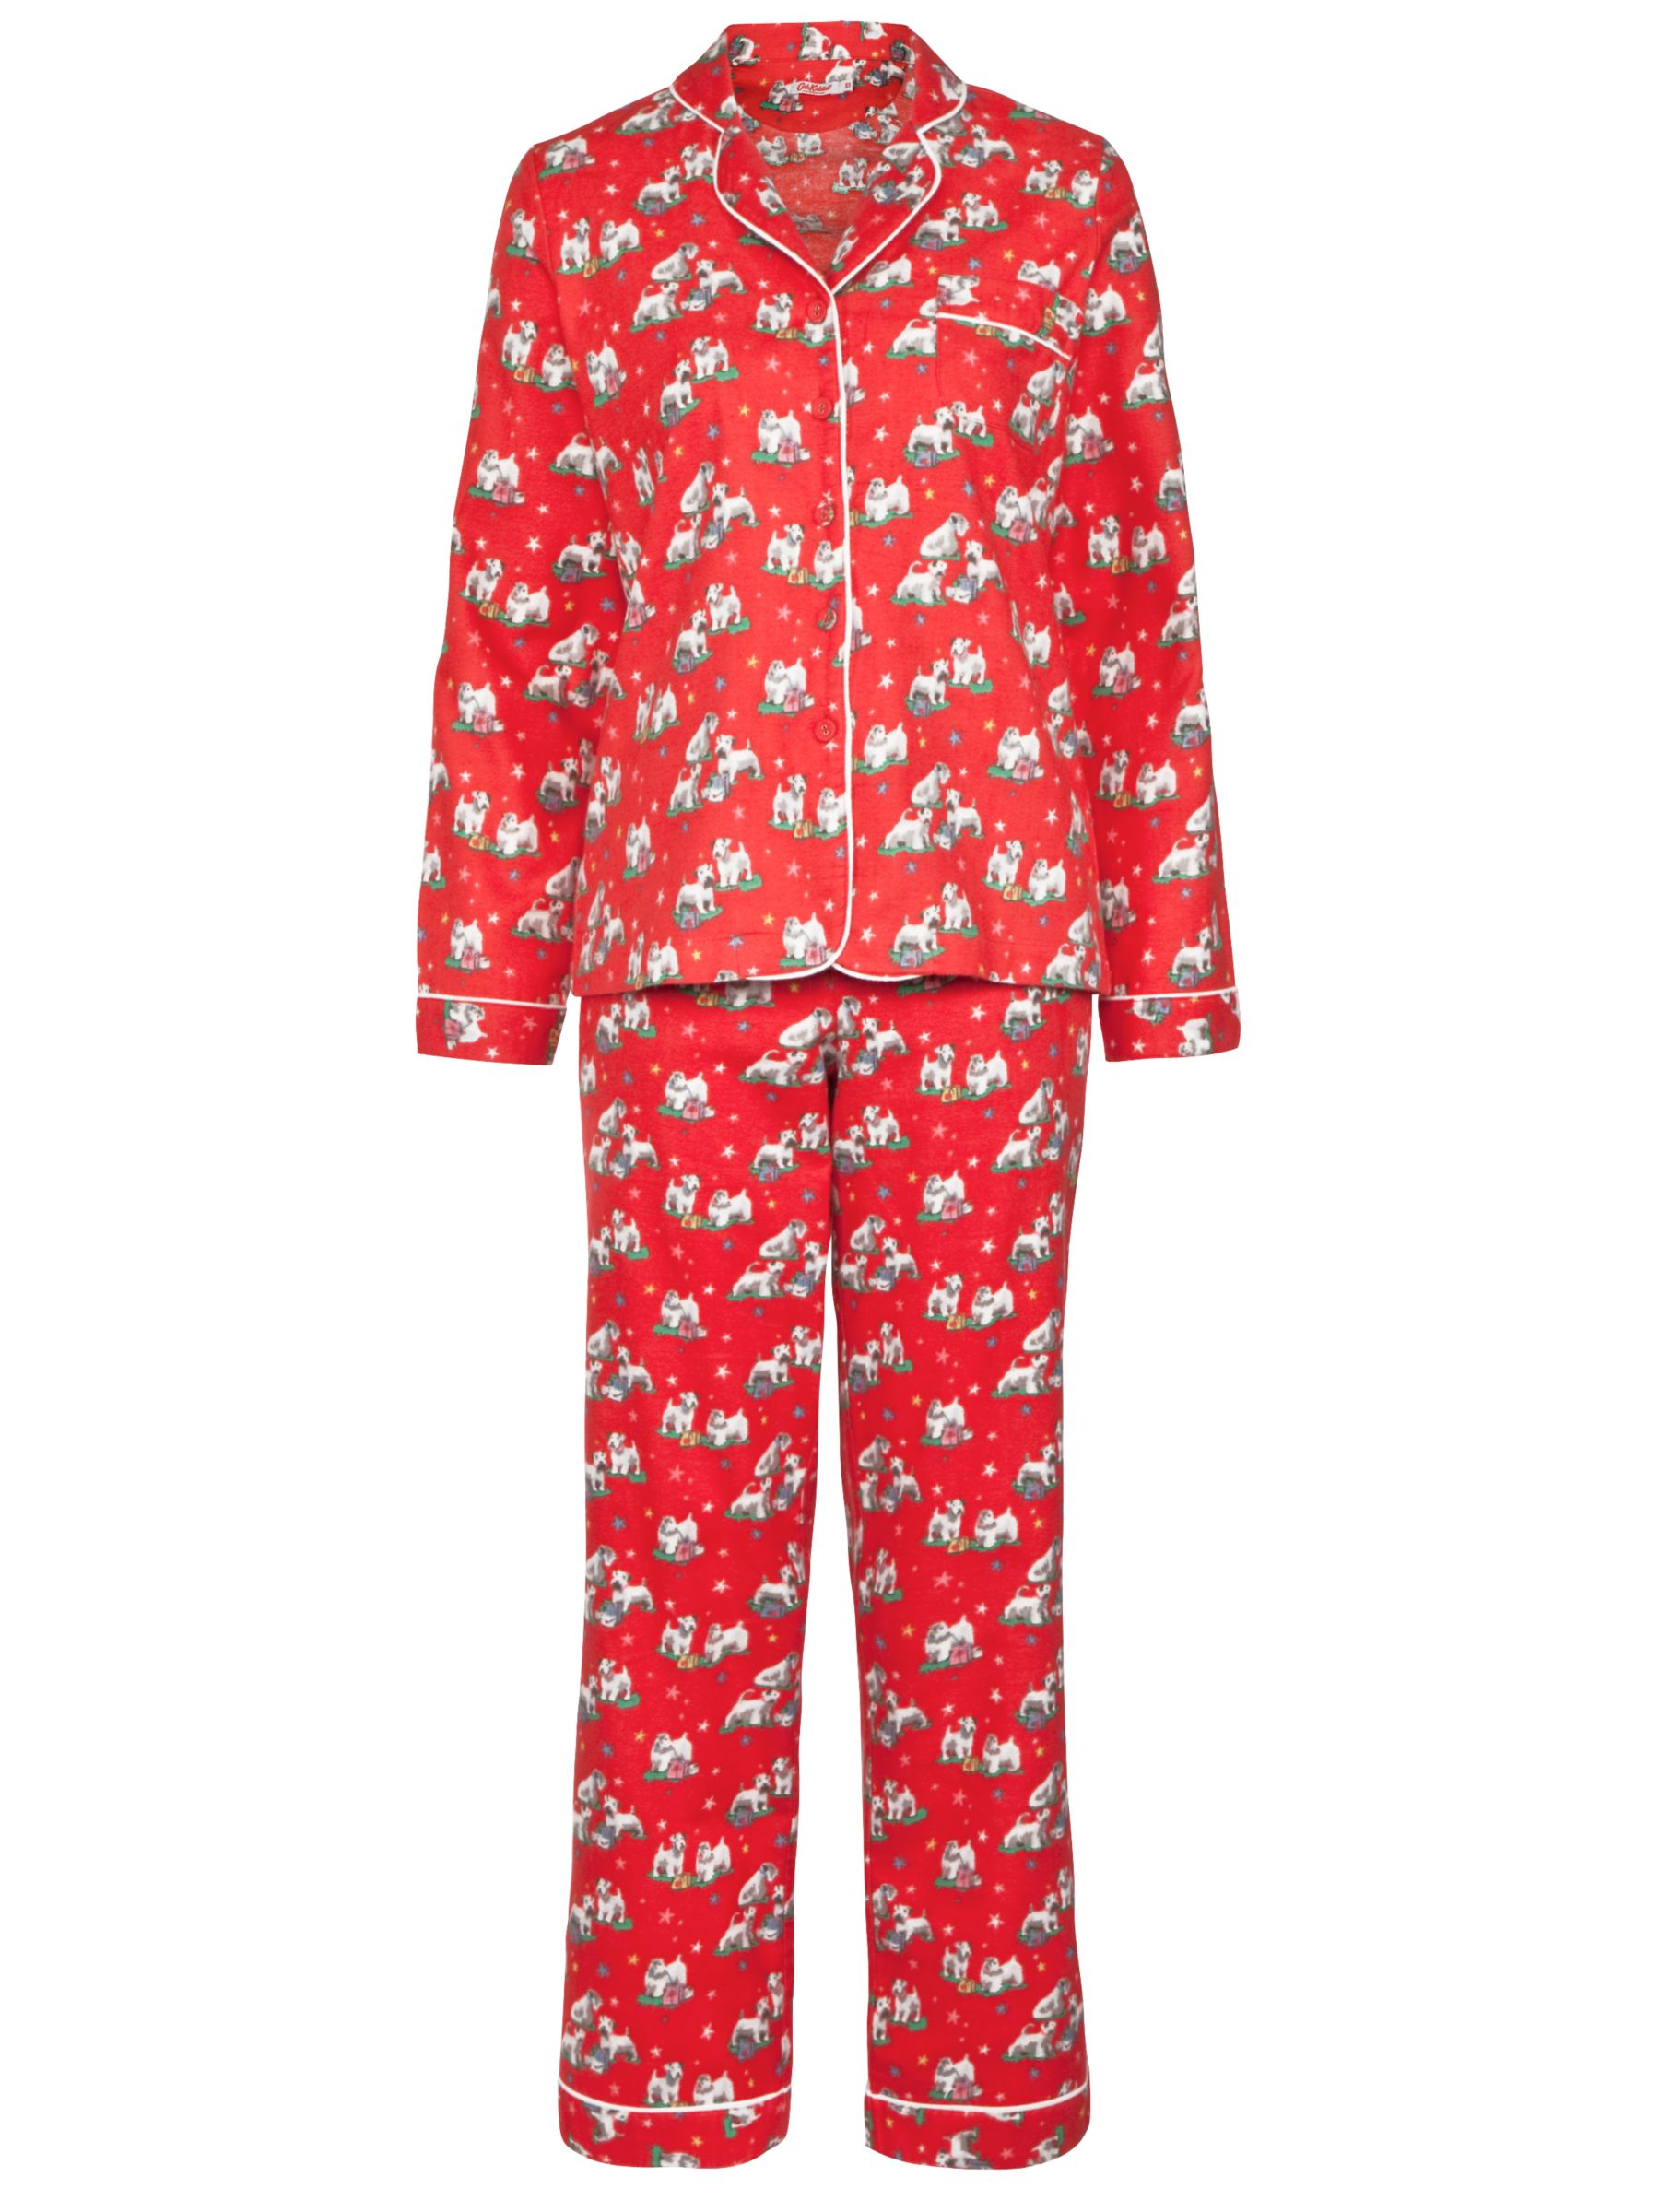 cath kidston pyjamas ladies